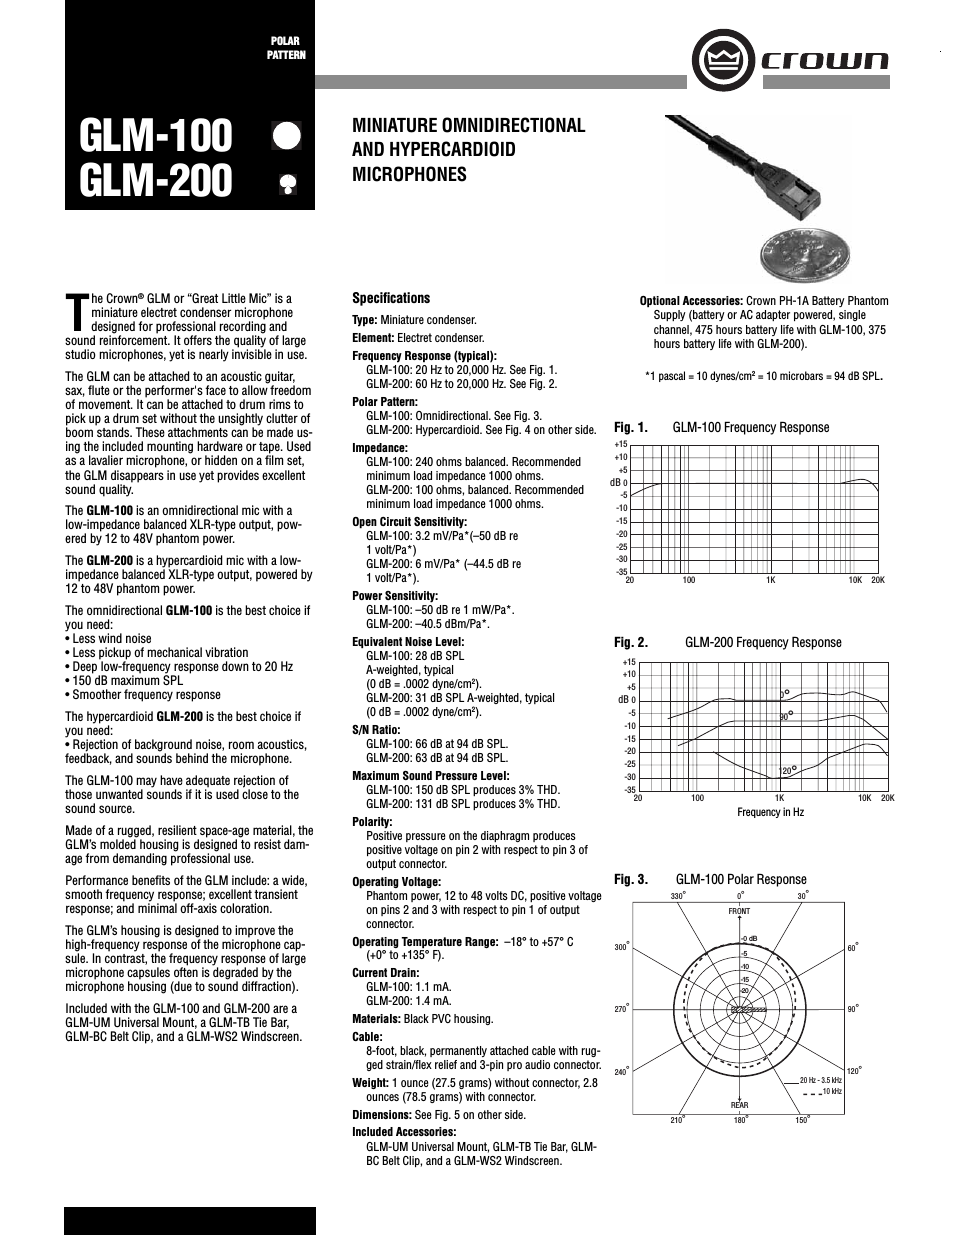 GLM-200